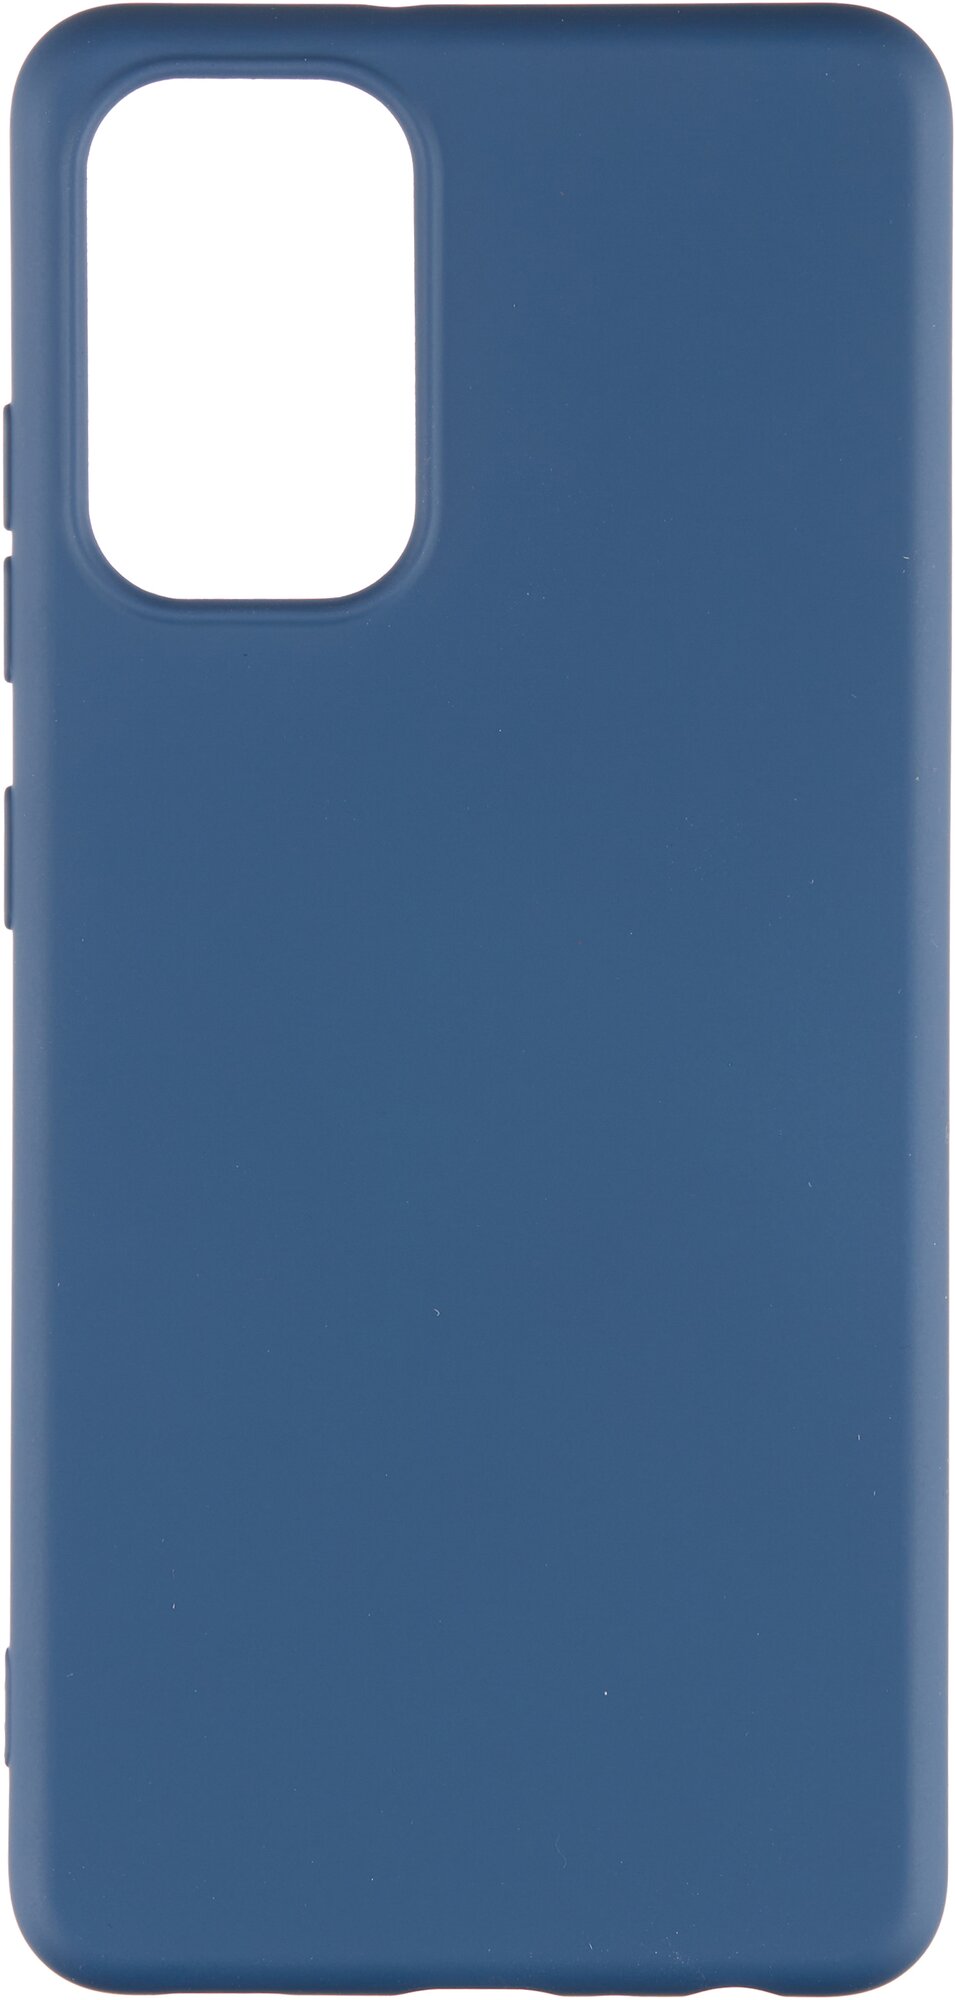 Накладка силикон Deppa Soft Silicone для Samsung Galaxy A32 (SM-A325) синий арт. 870106